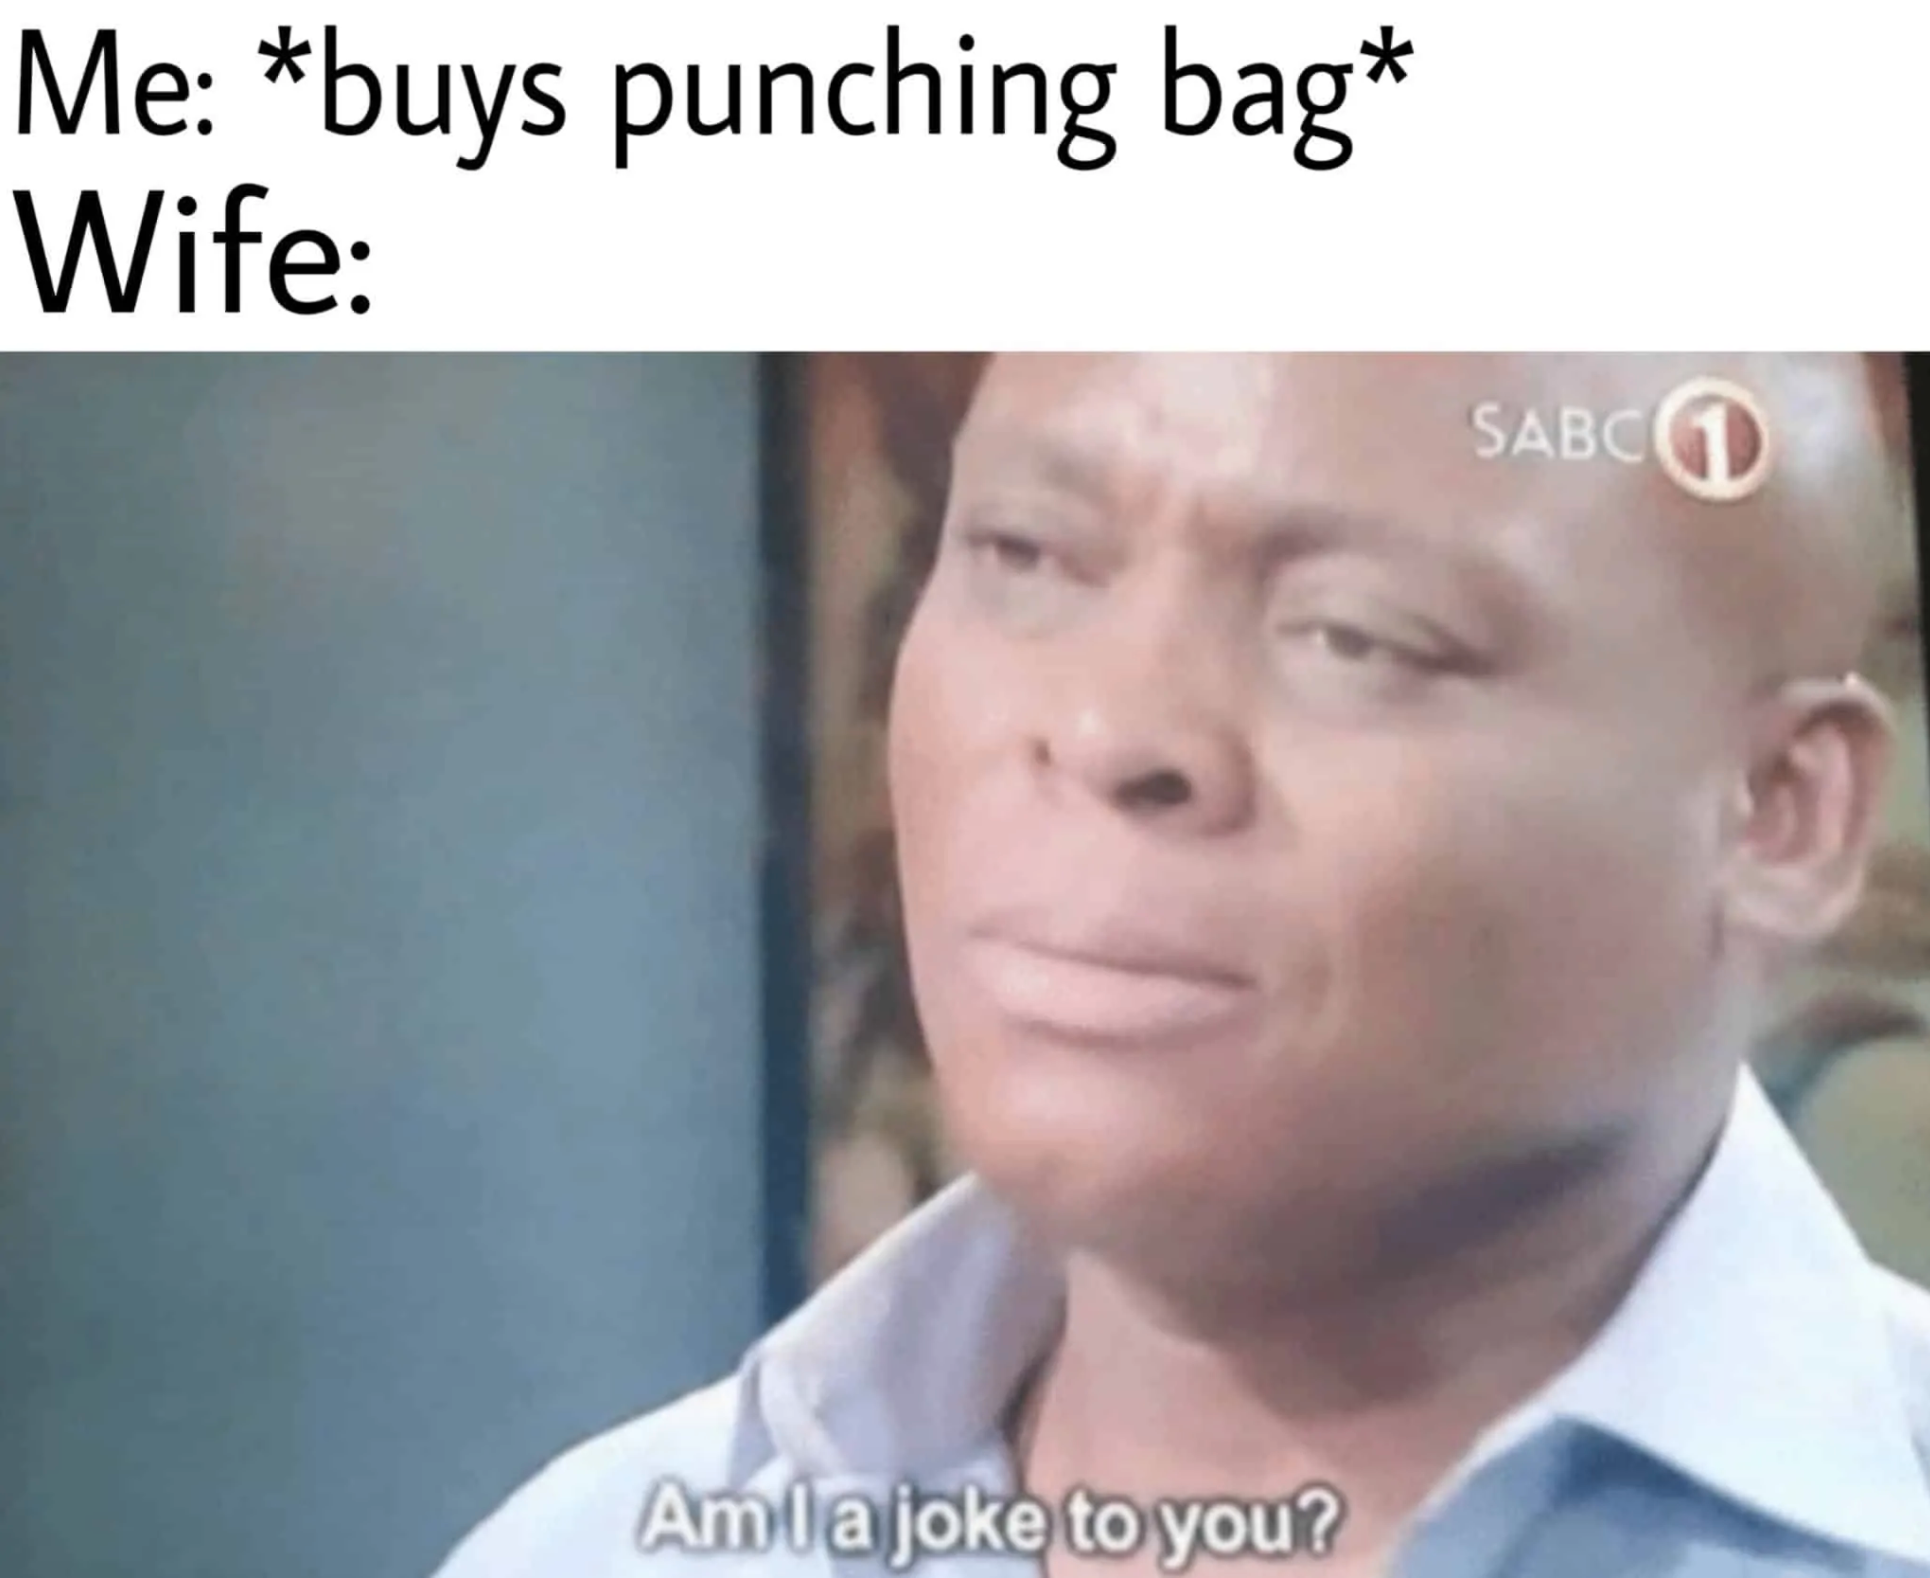 dank dark memes - Me buys punching bag Wife - Am I a joke to you?